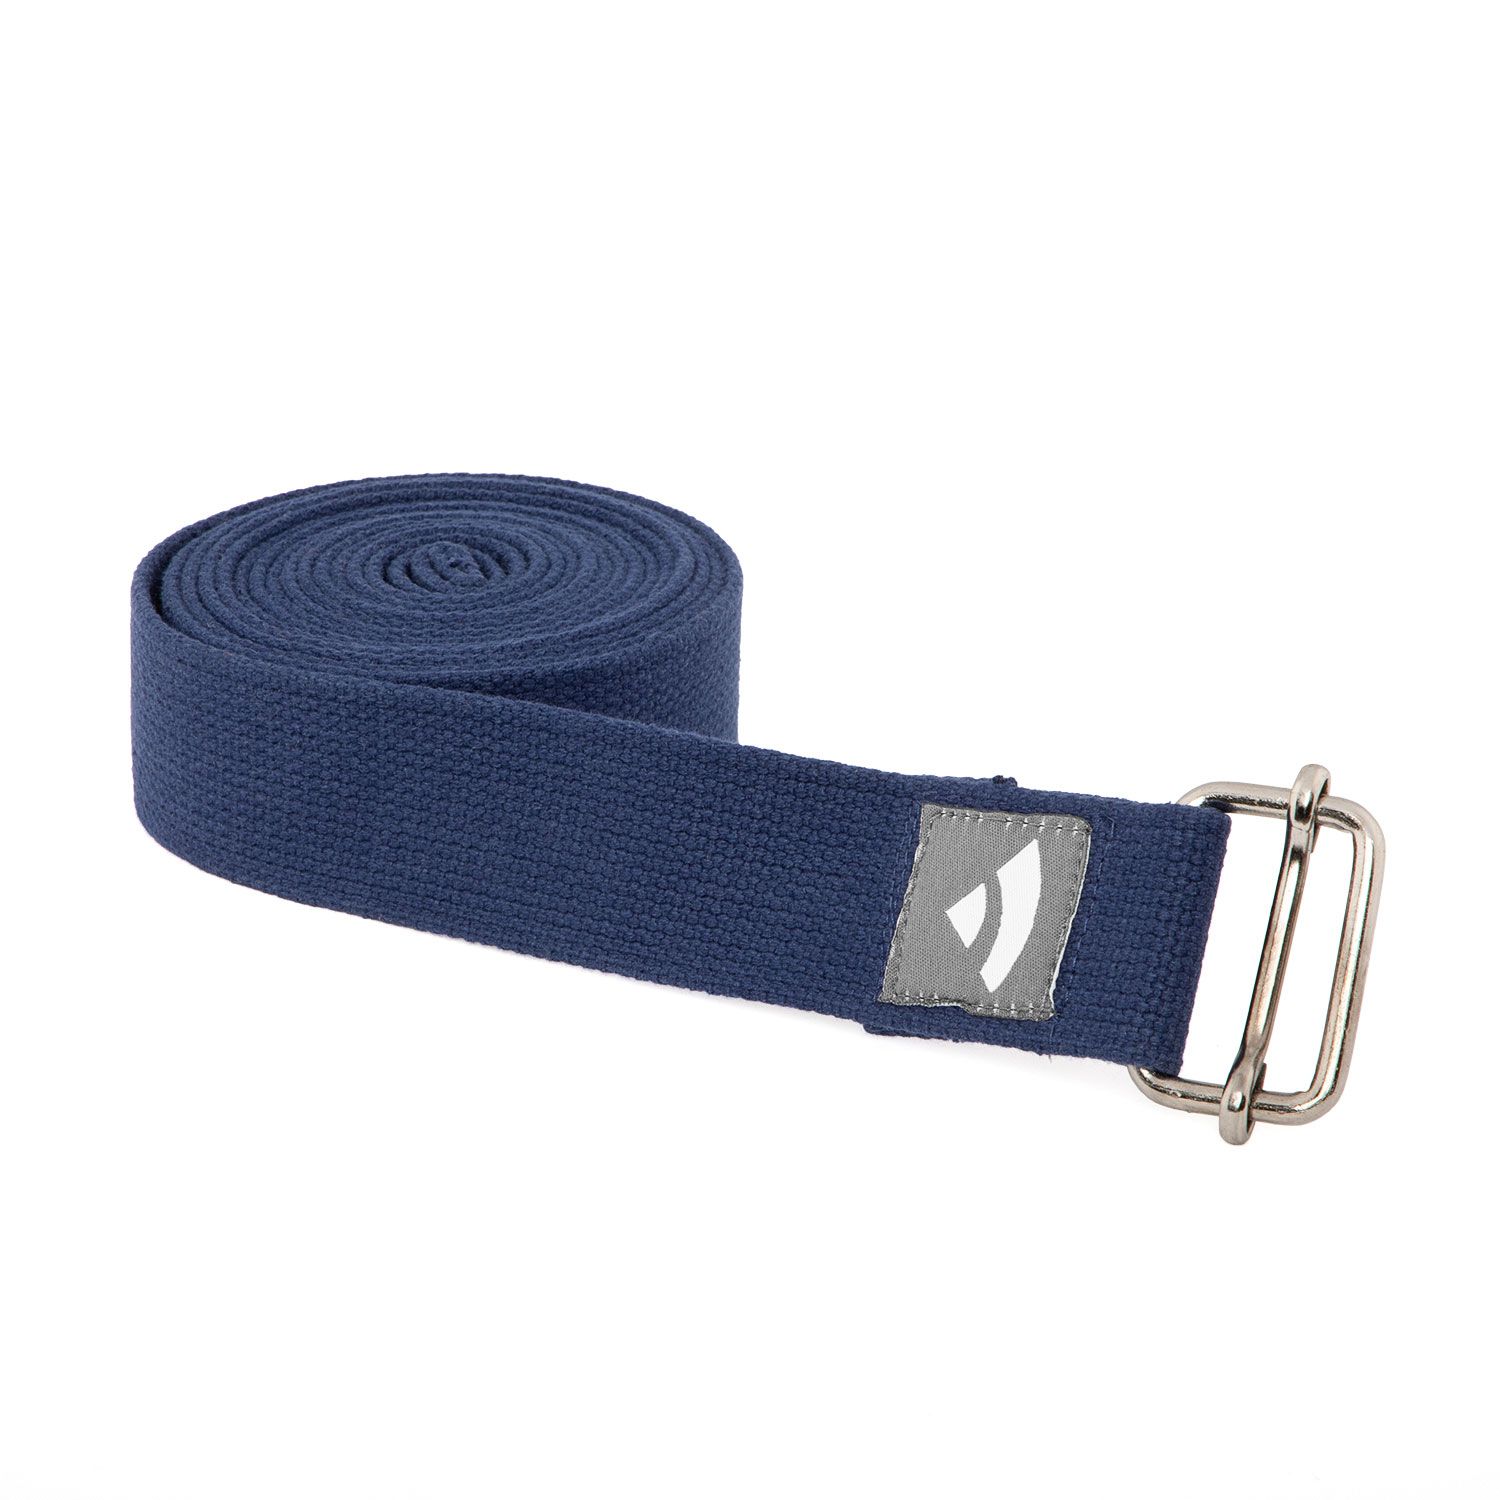 Asana Belt XL (Pro) aus Baumwolle mit Schiebeverschluss, dunkelblau 912-B